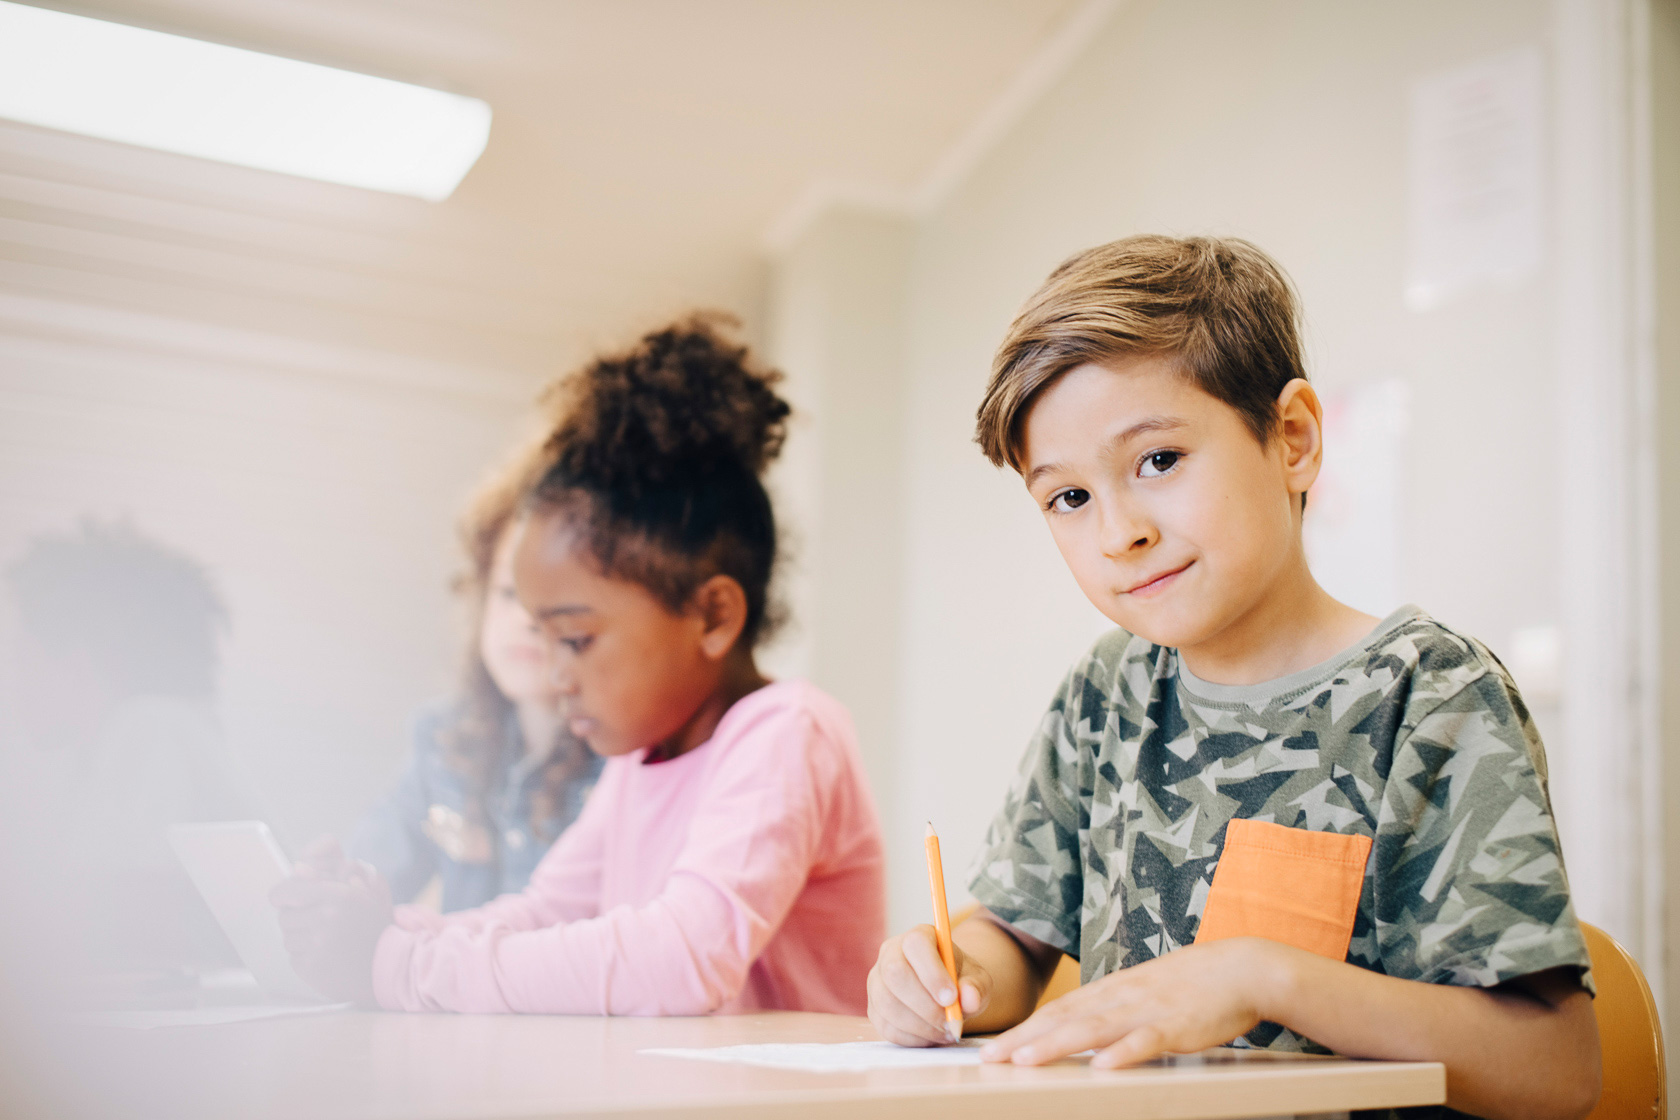 Dekorationsbild Viljaskolan. En pojke sitter vid sitt skrivbord i en skola. Han arbetar med papper och penna och ser nöjd ut när han tittar mot kameran. Några klasskamrater syns i bakgrunden.